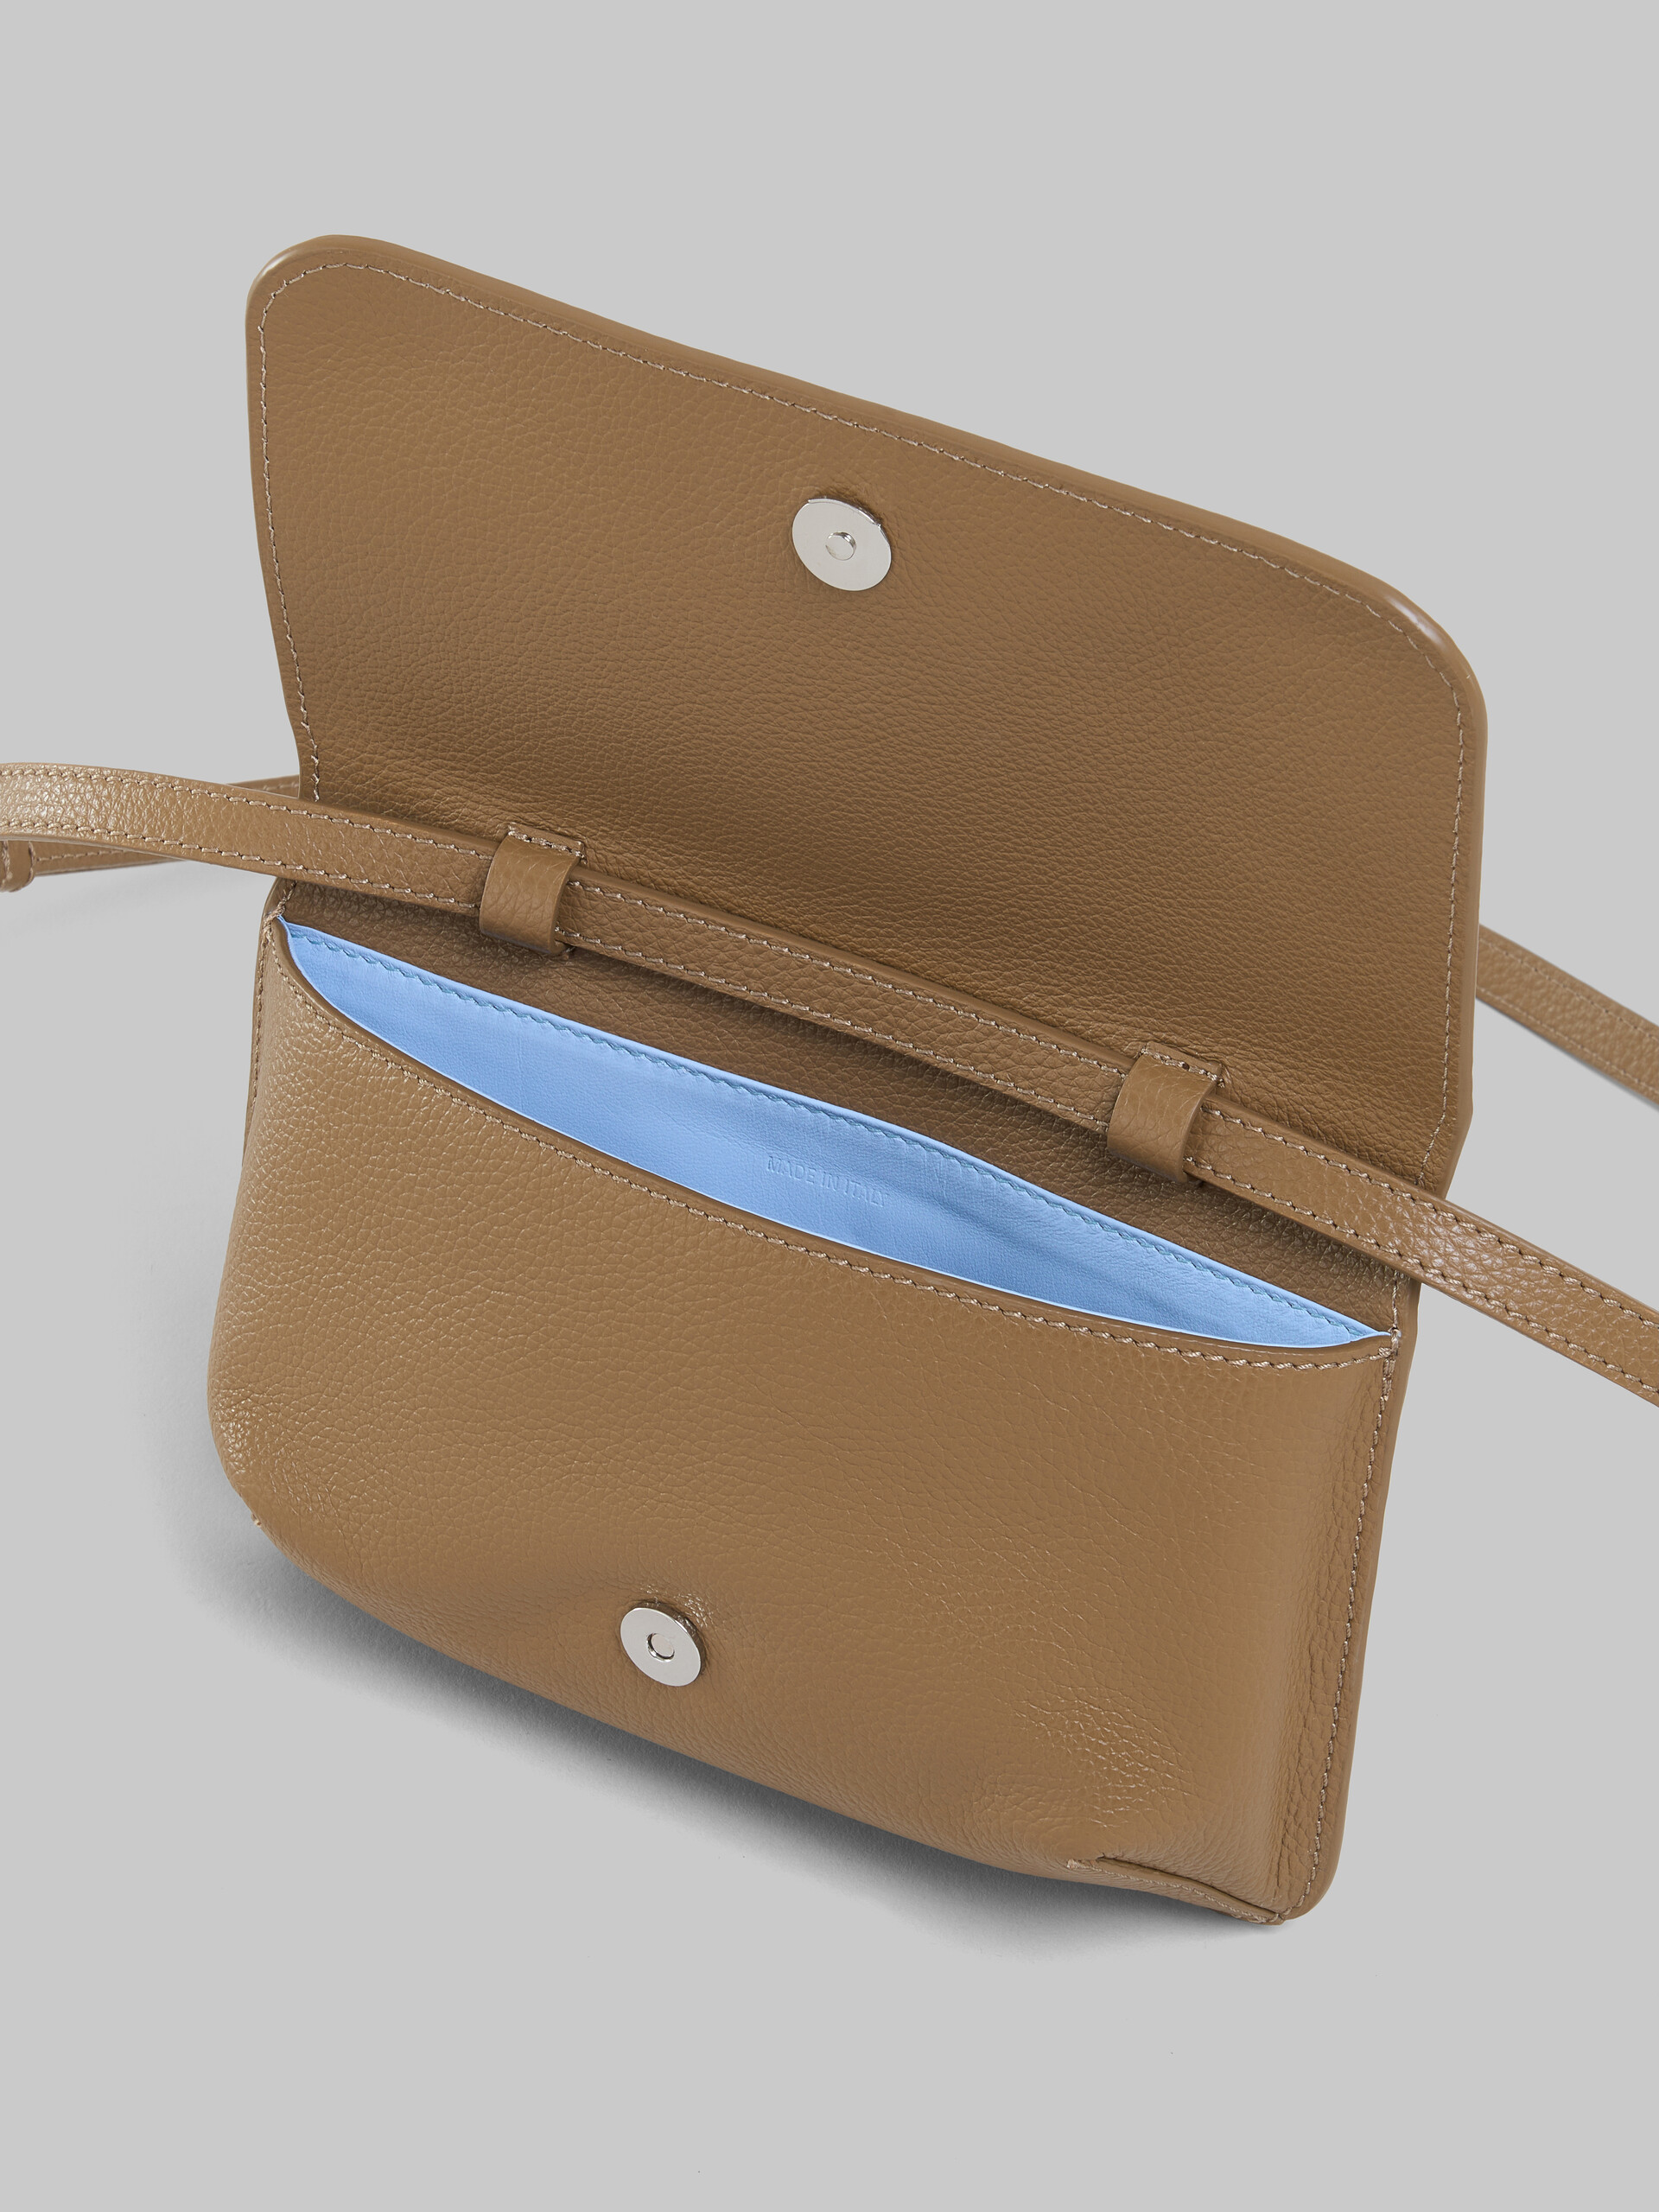 Blue leather shoulder bag with Marni mending - Pochettes - Image 4